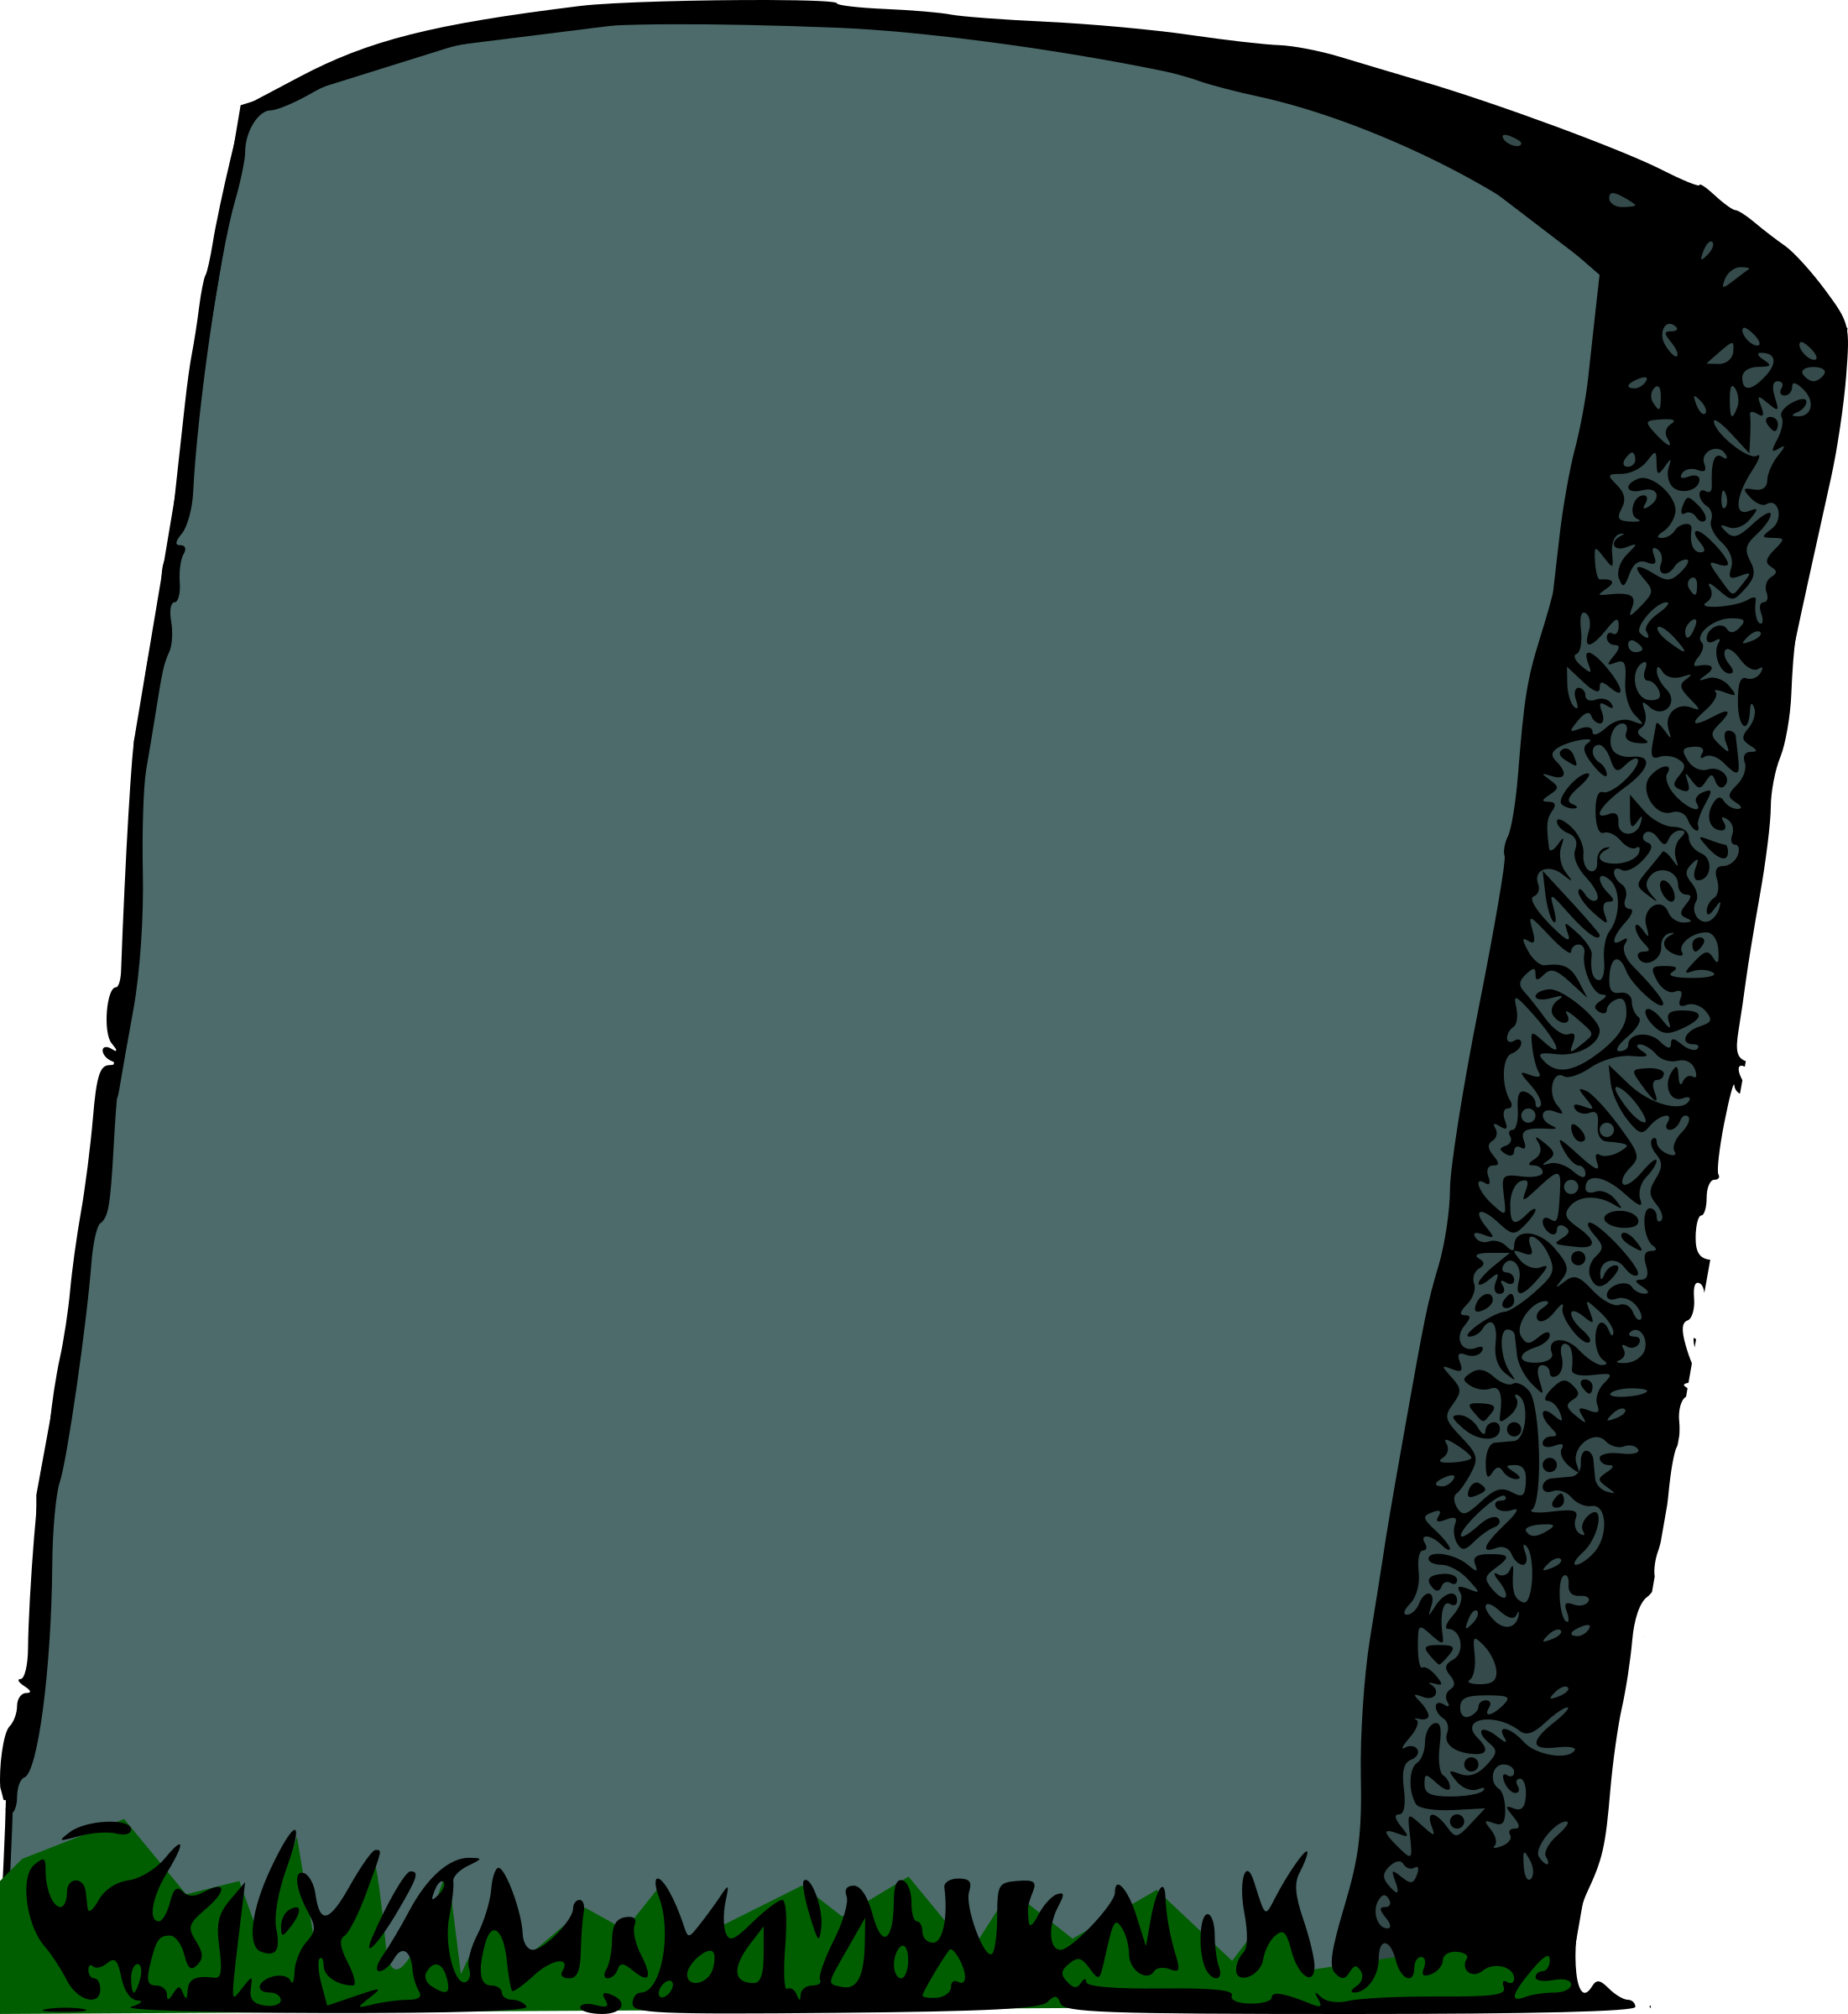 gravestone clipart future